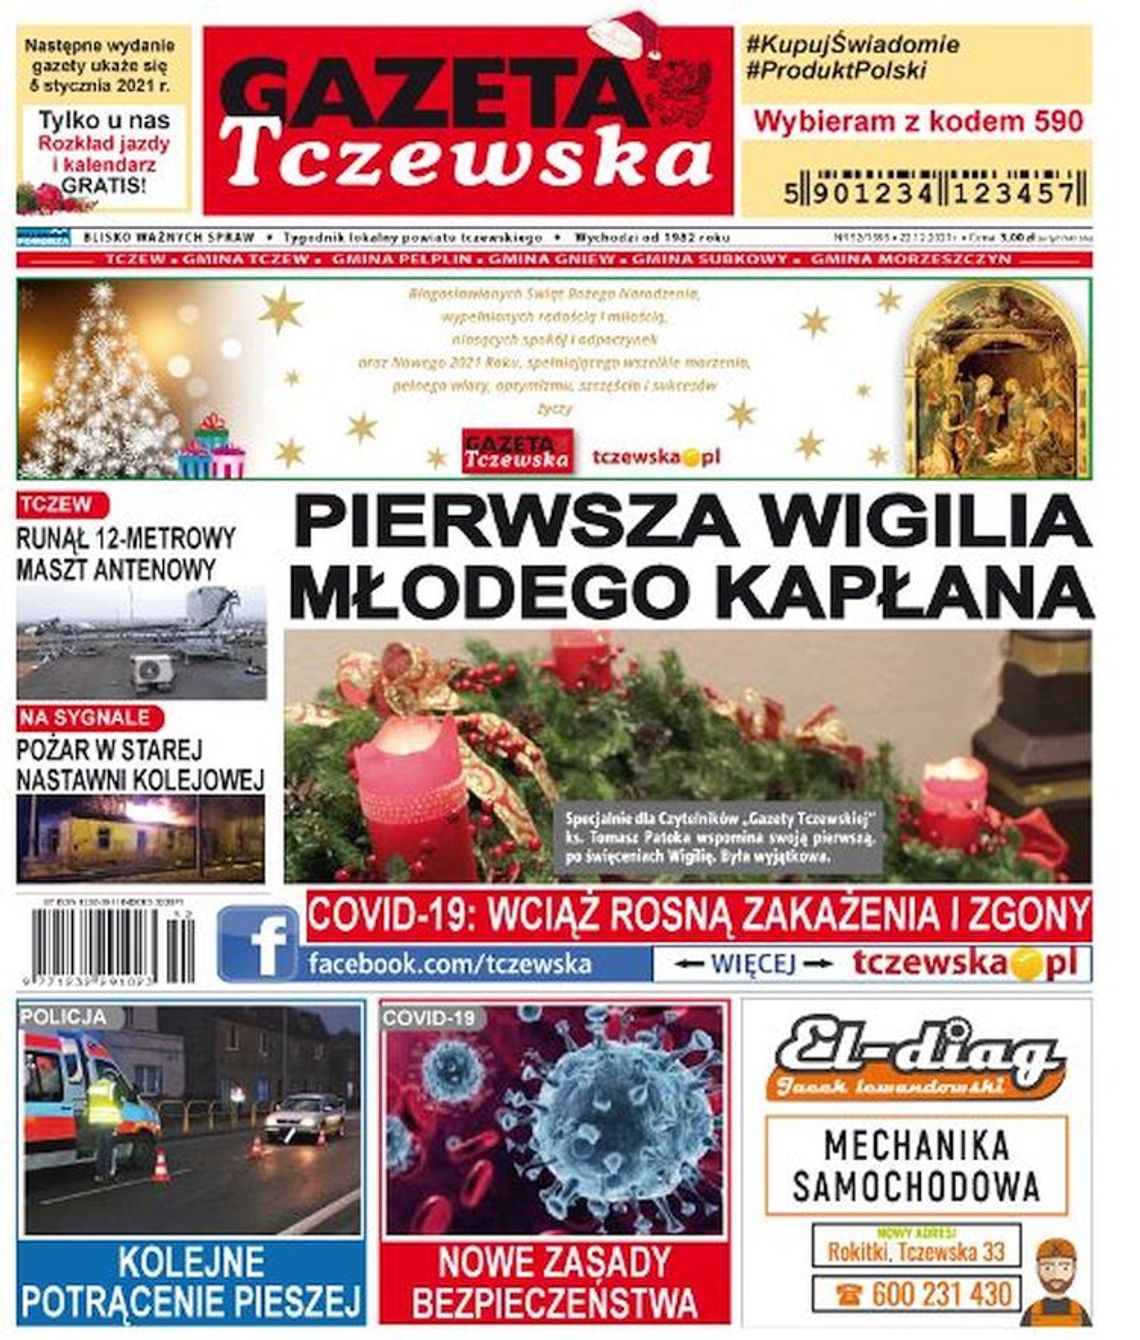 Świąteczne wydanie Gazety Tczewskiej już w sprzedaży. Najnowsze informacje z Tczewa i gmin naszego powiatu już w Twoim kiosku. Co w środku?